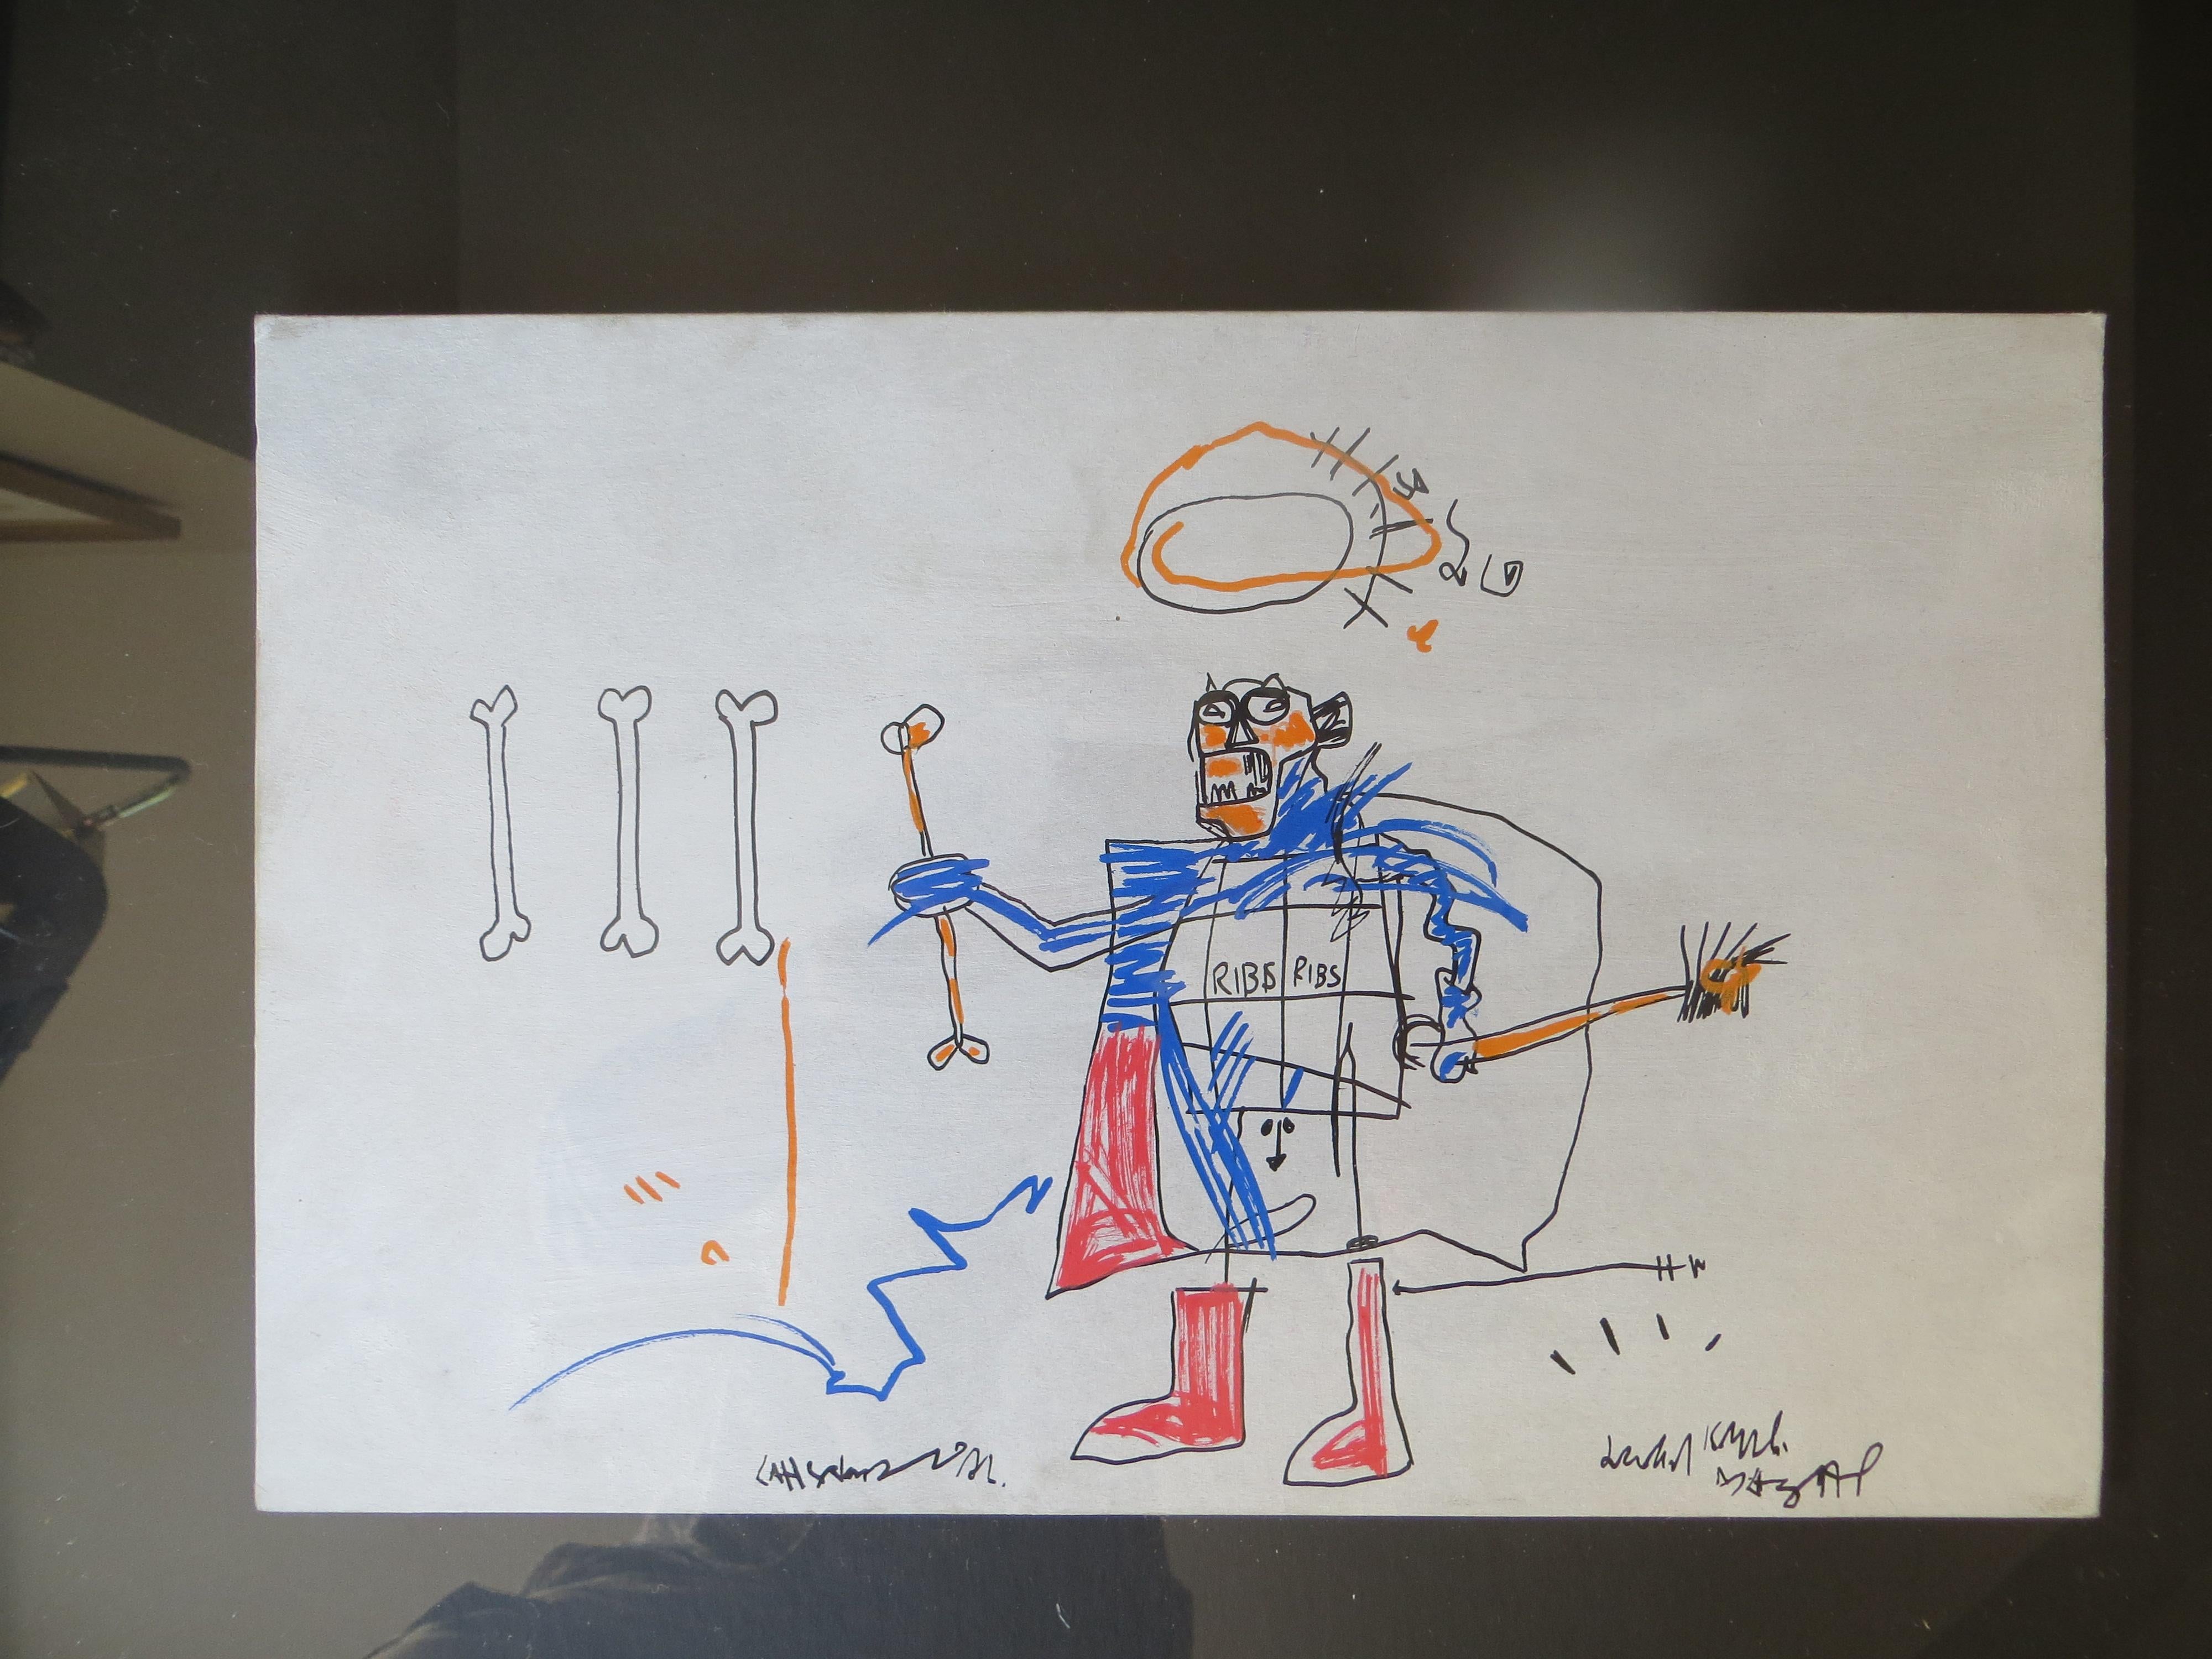 D'après Jean-Michel Basquiat,  2010-2012.
Jean-Michel BASQUIAT - RIBS RIBS (1982) Technique mixte 
Jean-Michel Basquiat ( 1960 - 1988 ) est né de deux immigrés haïtiens à Brooklyn New York en 1960. Il a commencé sa carrière créative en tant que